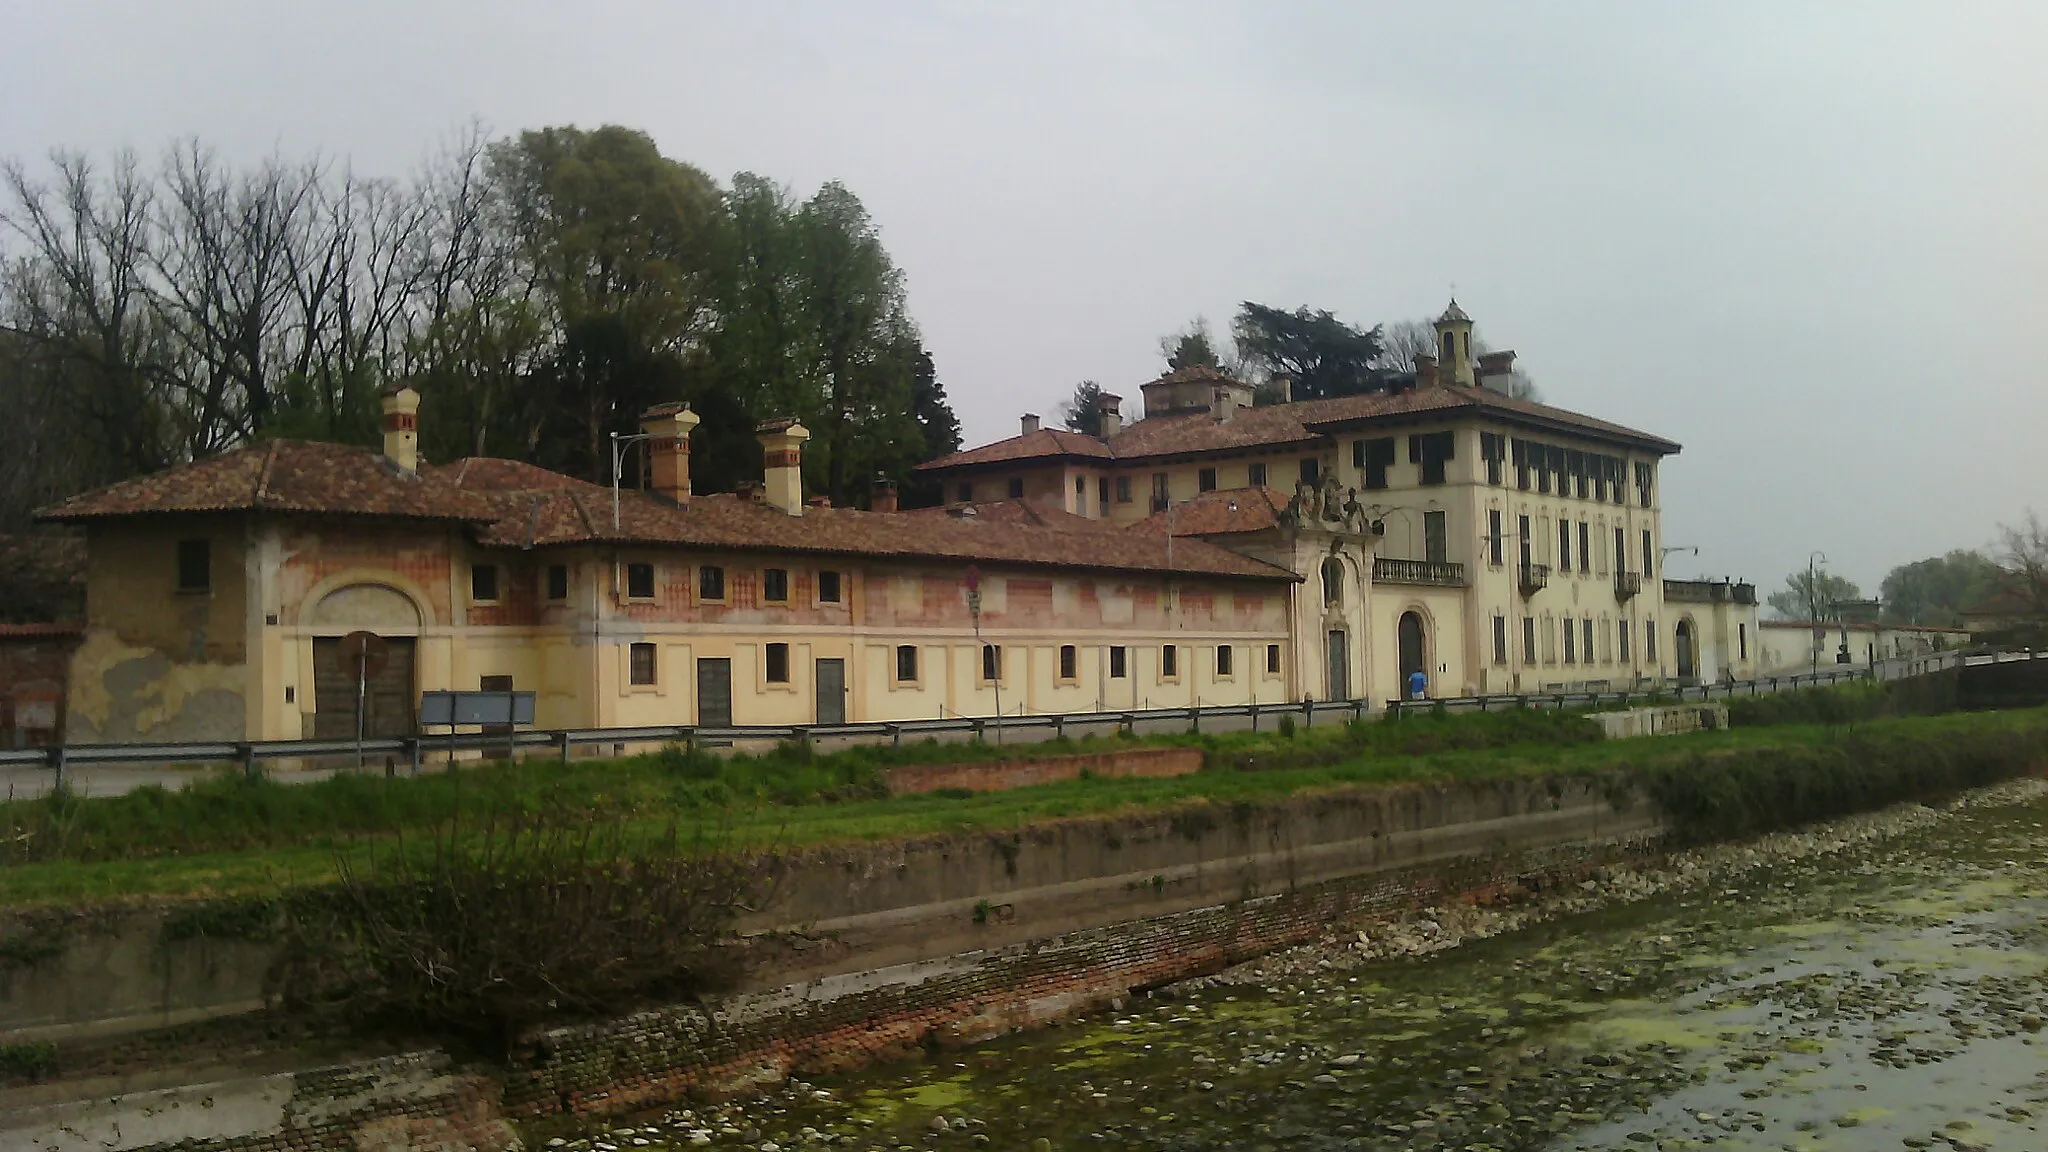 Image of Cassinetta di Lugagnano